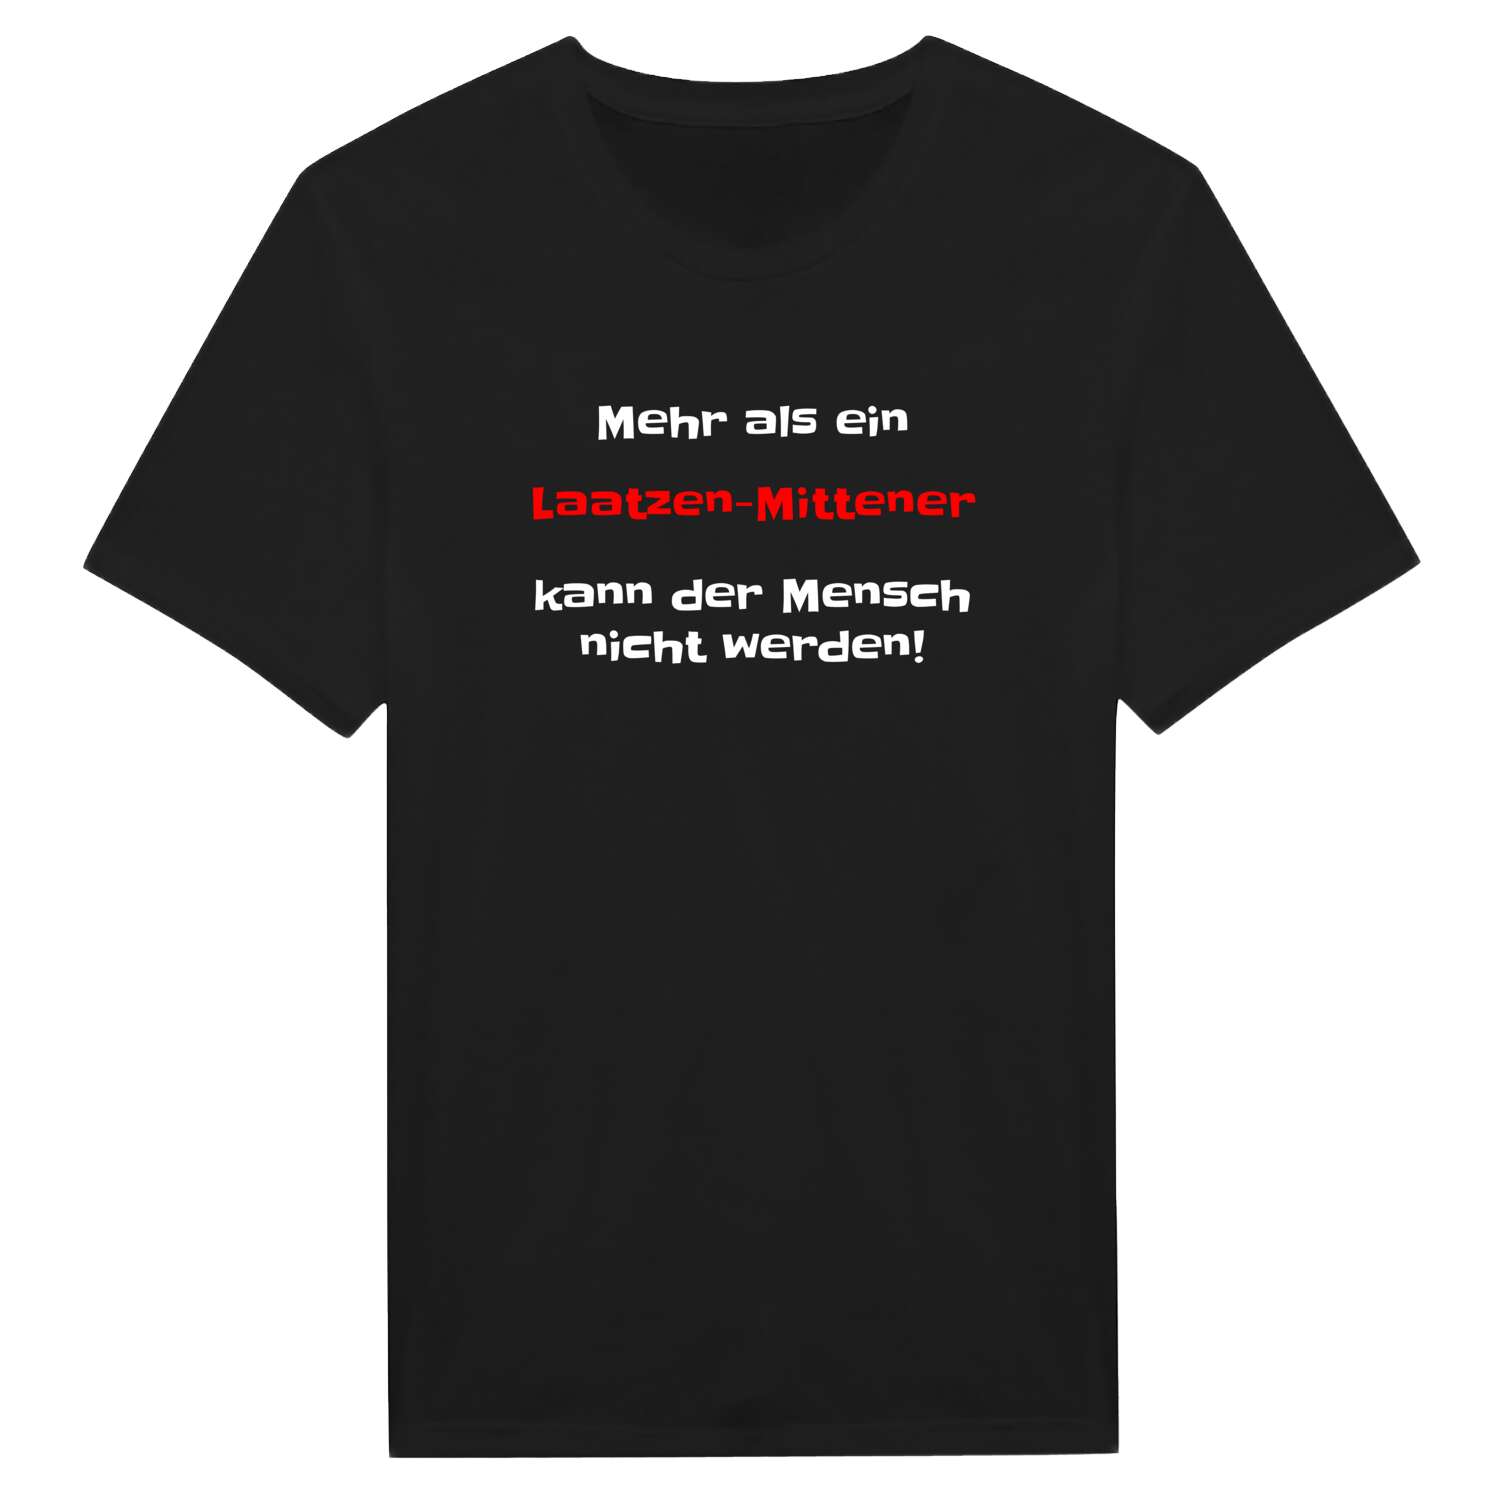 Laatzen-Mitte T-Shirt »Mehr als ein«